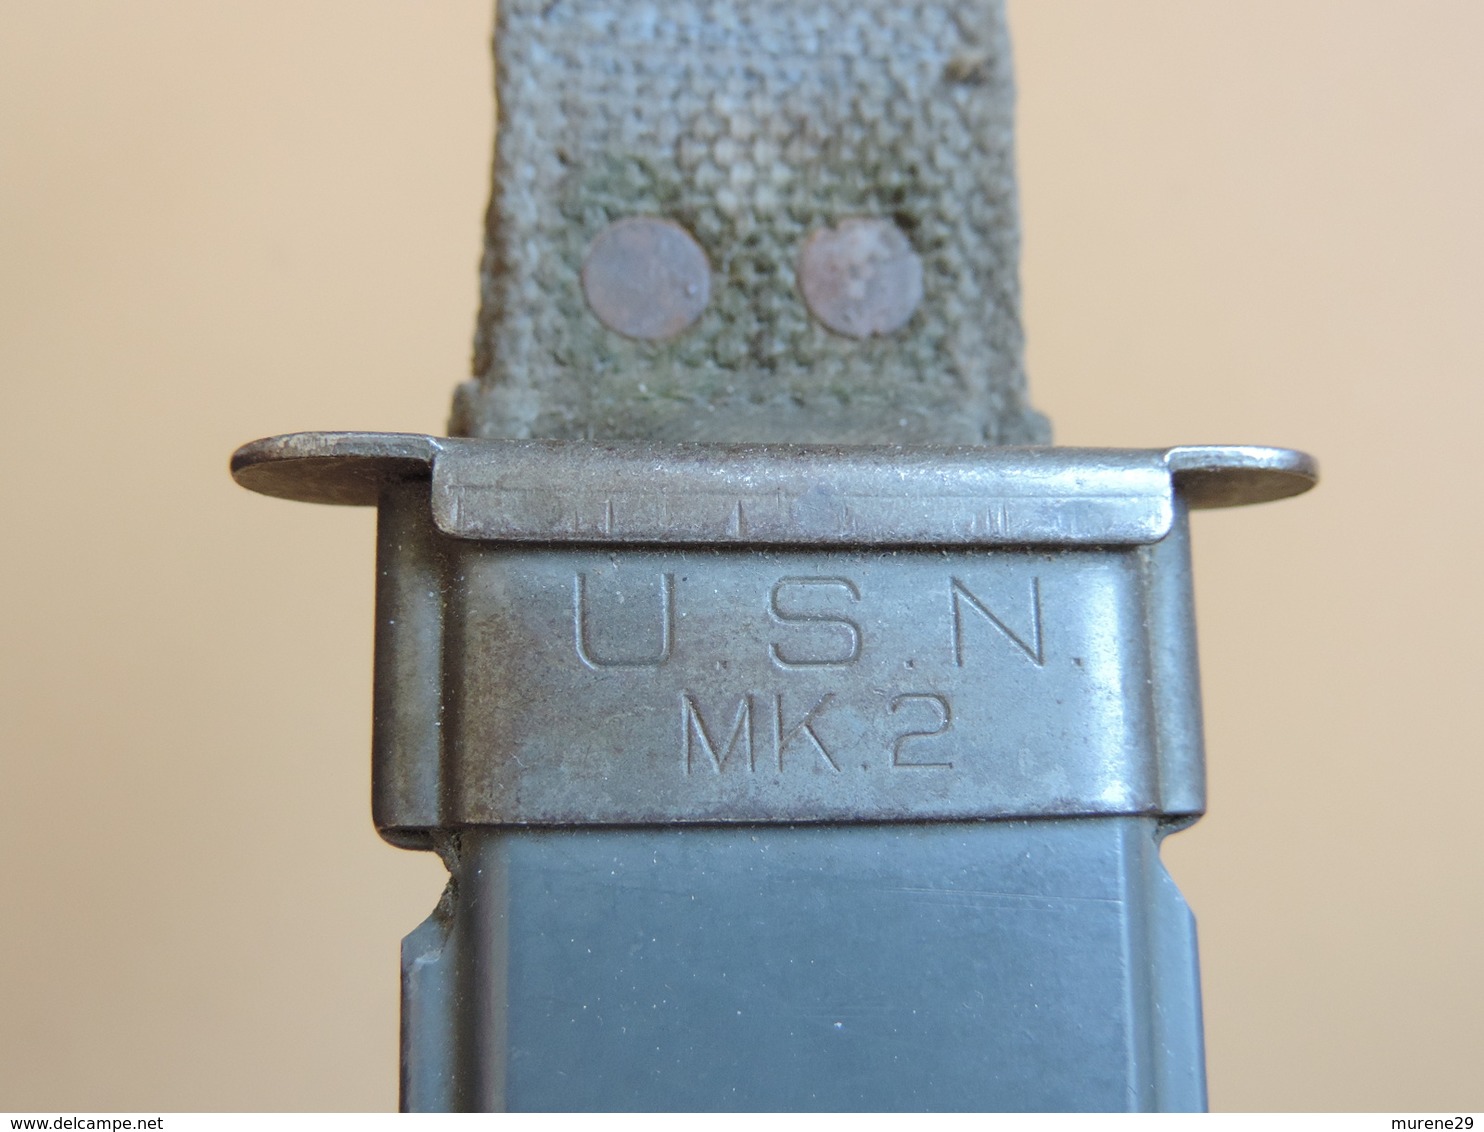 Couteau USN MK2 CAMILLUS à marquage sur lame, US WW2.